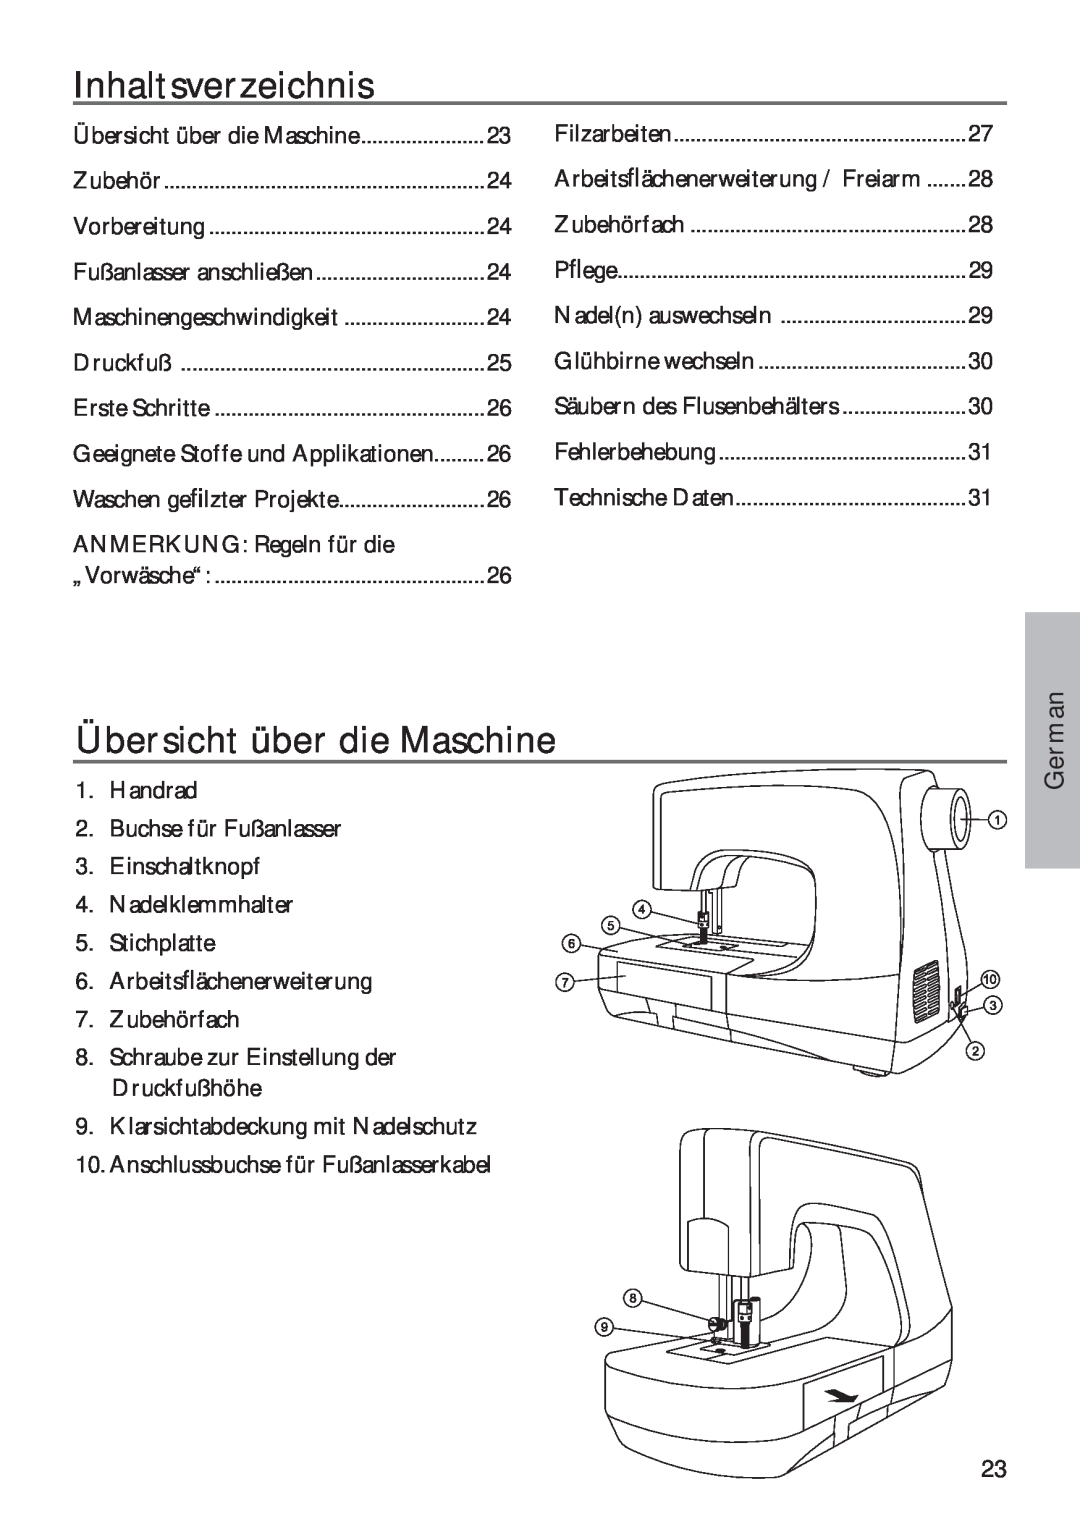 Pfaff 350P owner manual Inhaltsverzeichnis, Übersicht über die Maschine, German 